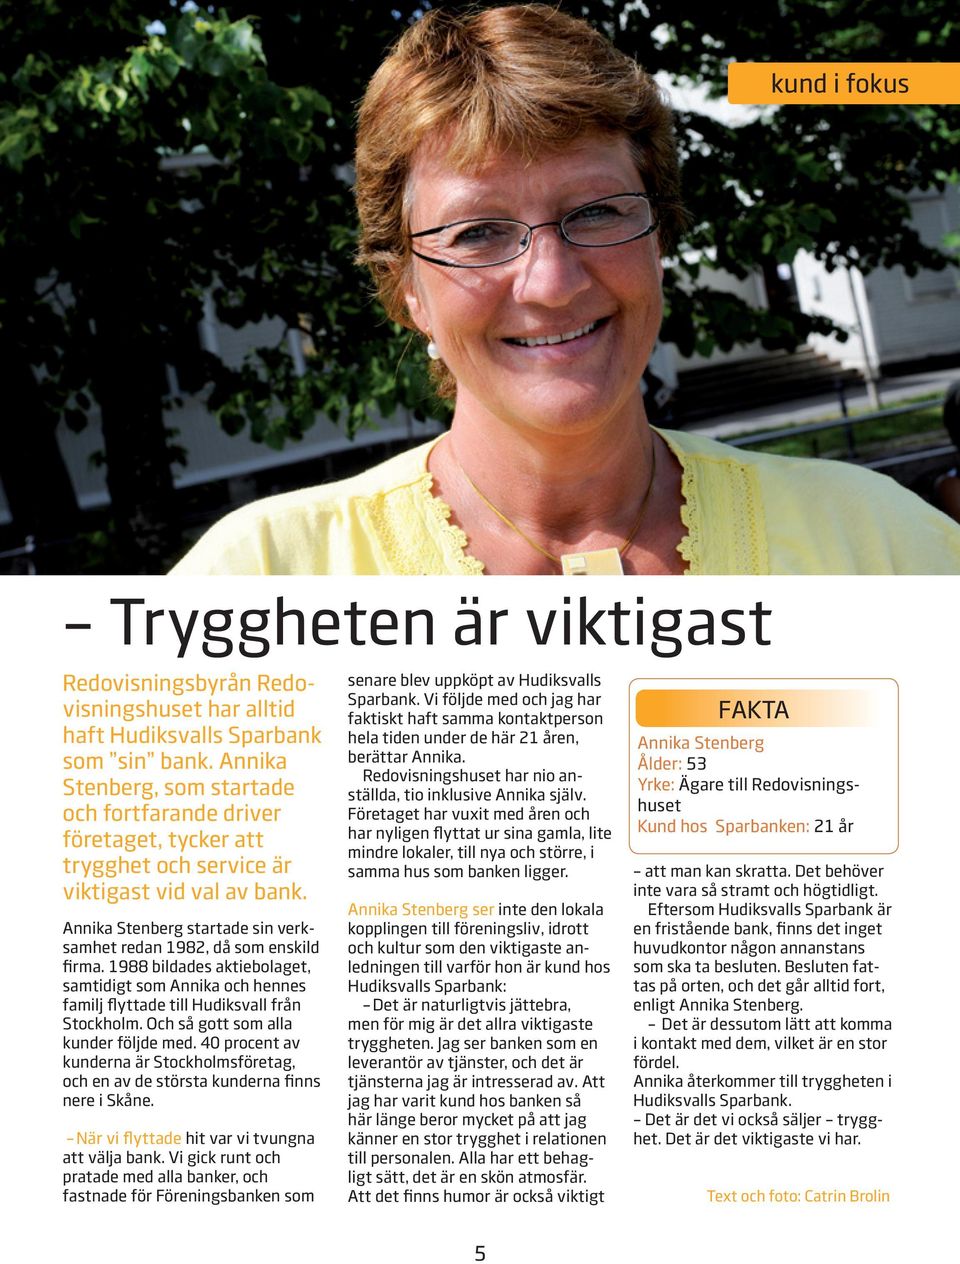 1988 bildades aktiebolaget, samtidigt som Annika och hennes familj flyttade till Hudiksvall från Stockholm. Och så gott som alla kunder följde med.